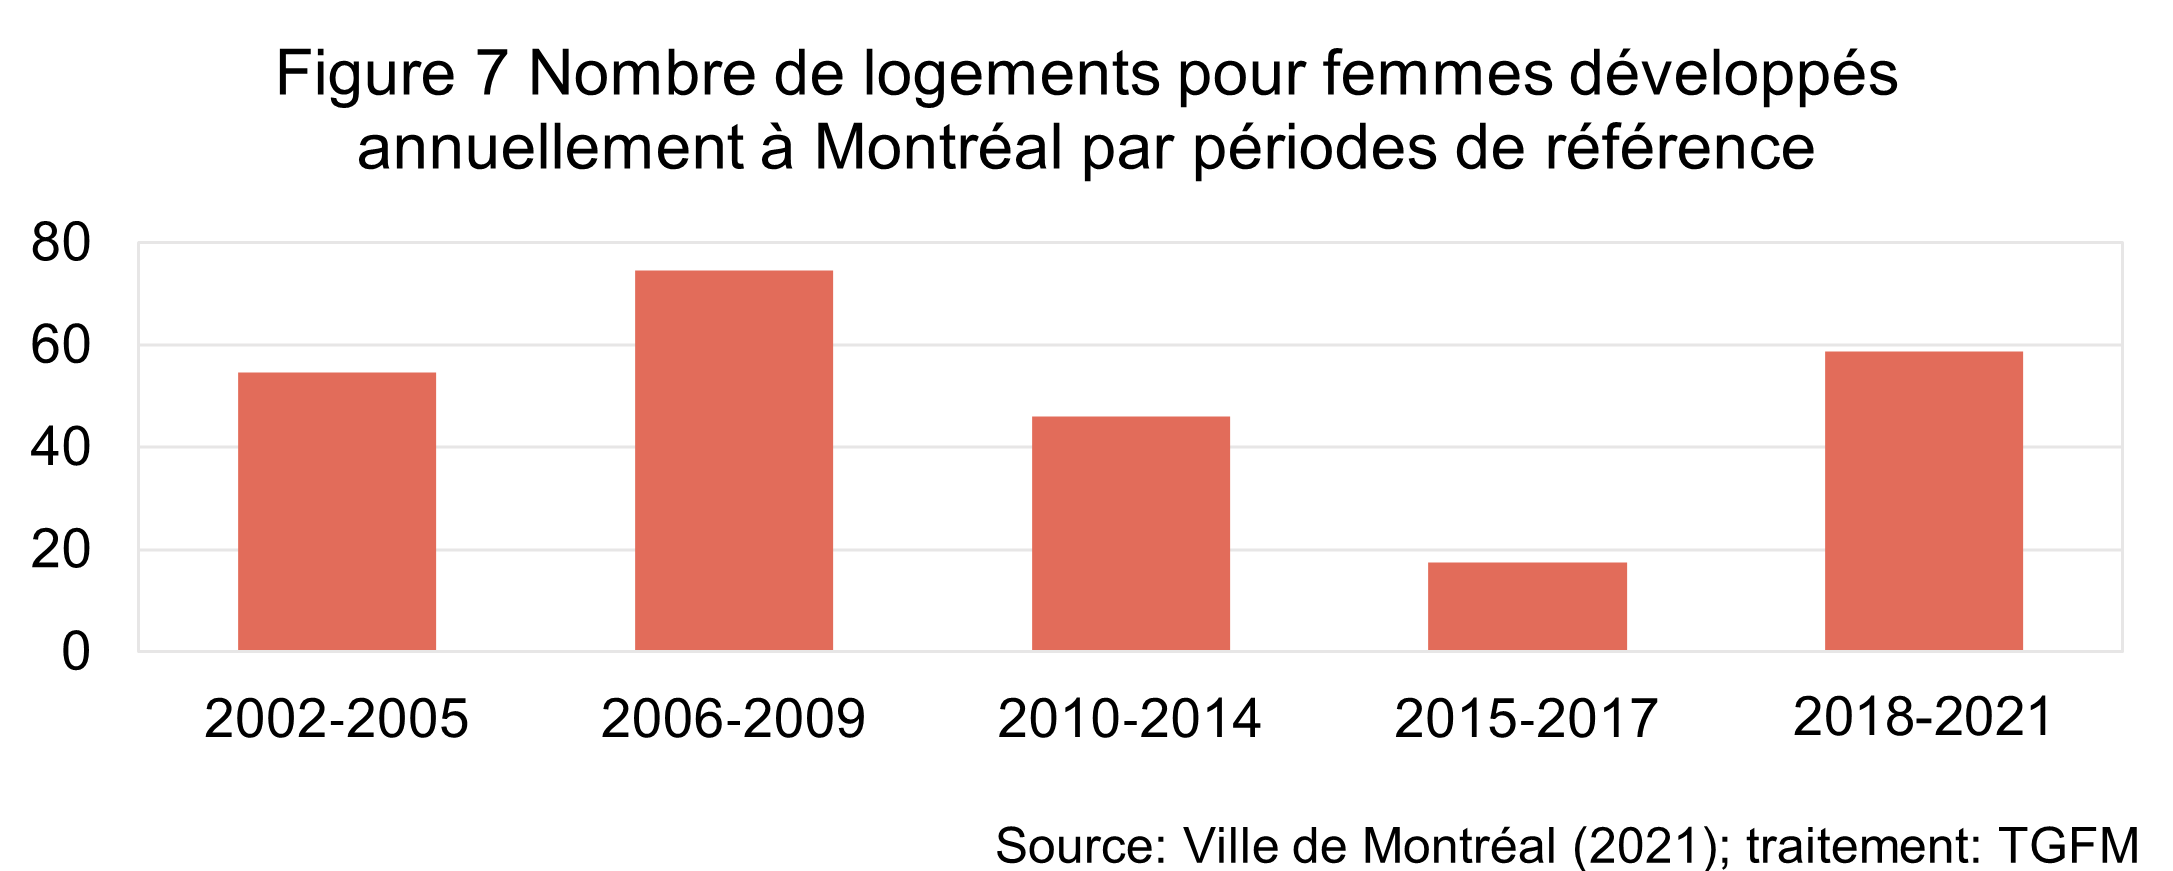 La figure illustre que le nombre de logements pour femmes développés à Montréal était de d'une cinquantaine entre 2002 et 2014. Ce nombre a chuté à 18 logements par année entre 2015 et 2017. Depuis 2018, il y a un retour à la normale avec 59 logements par année. 